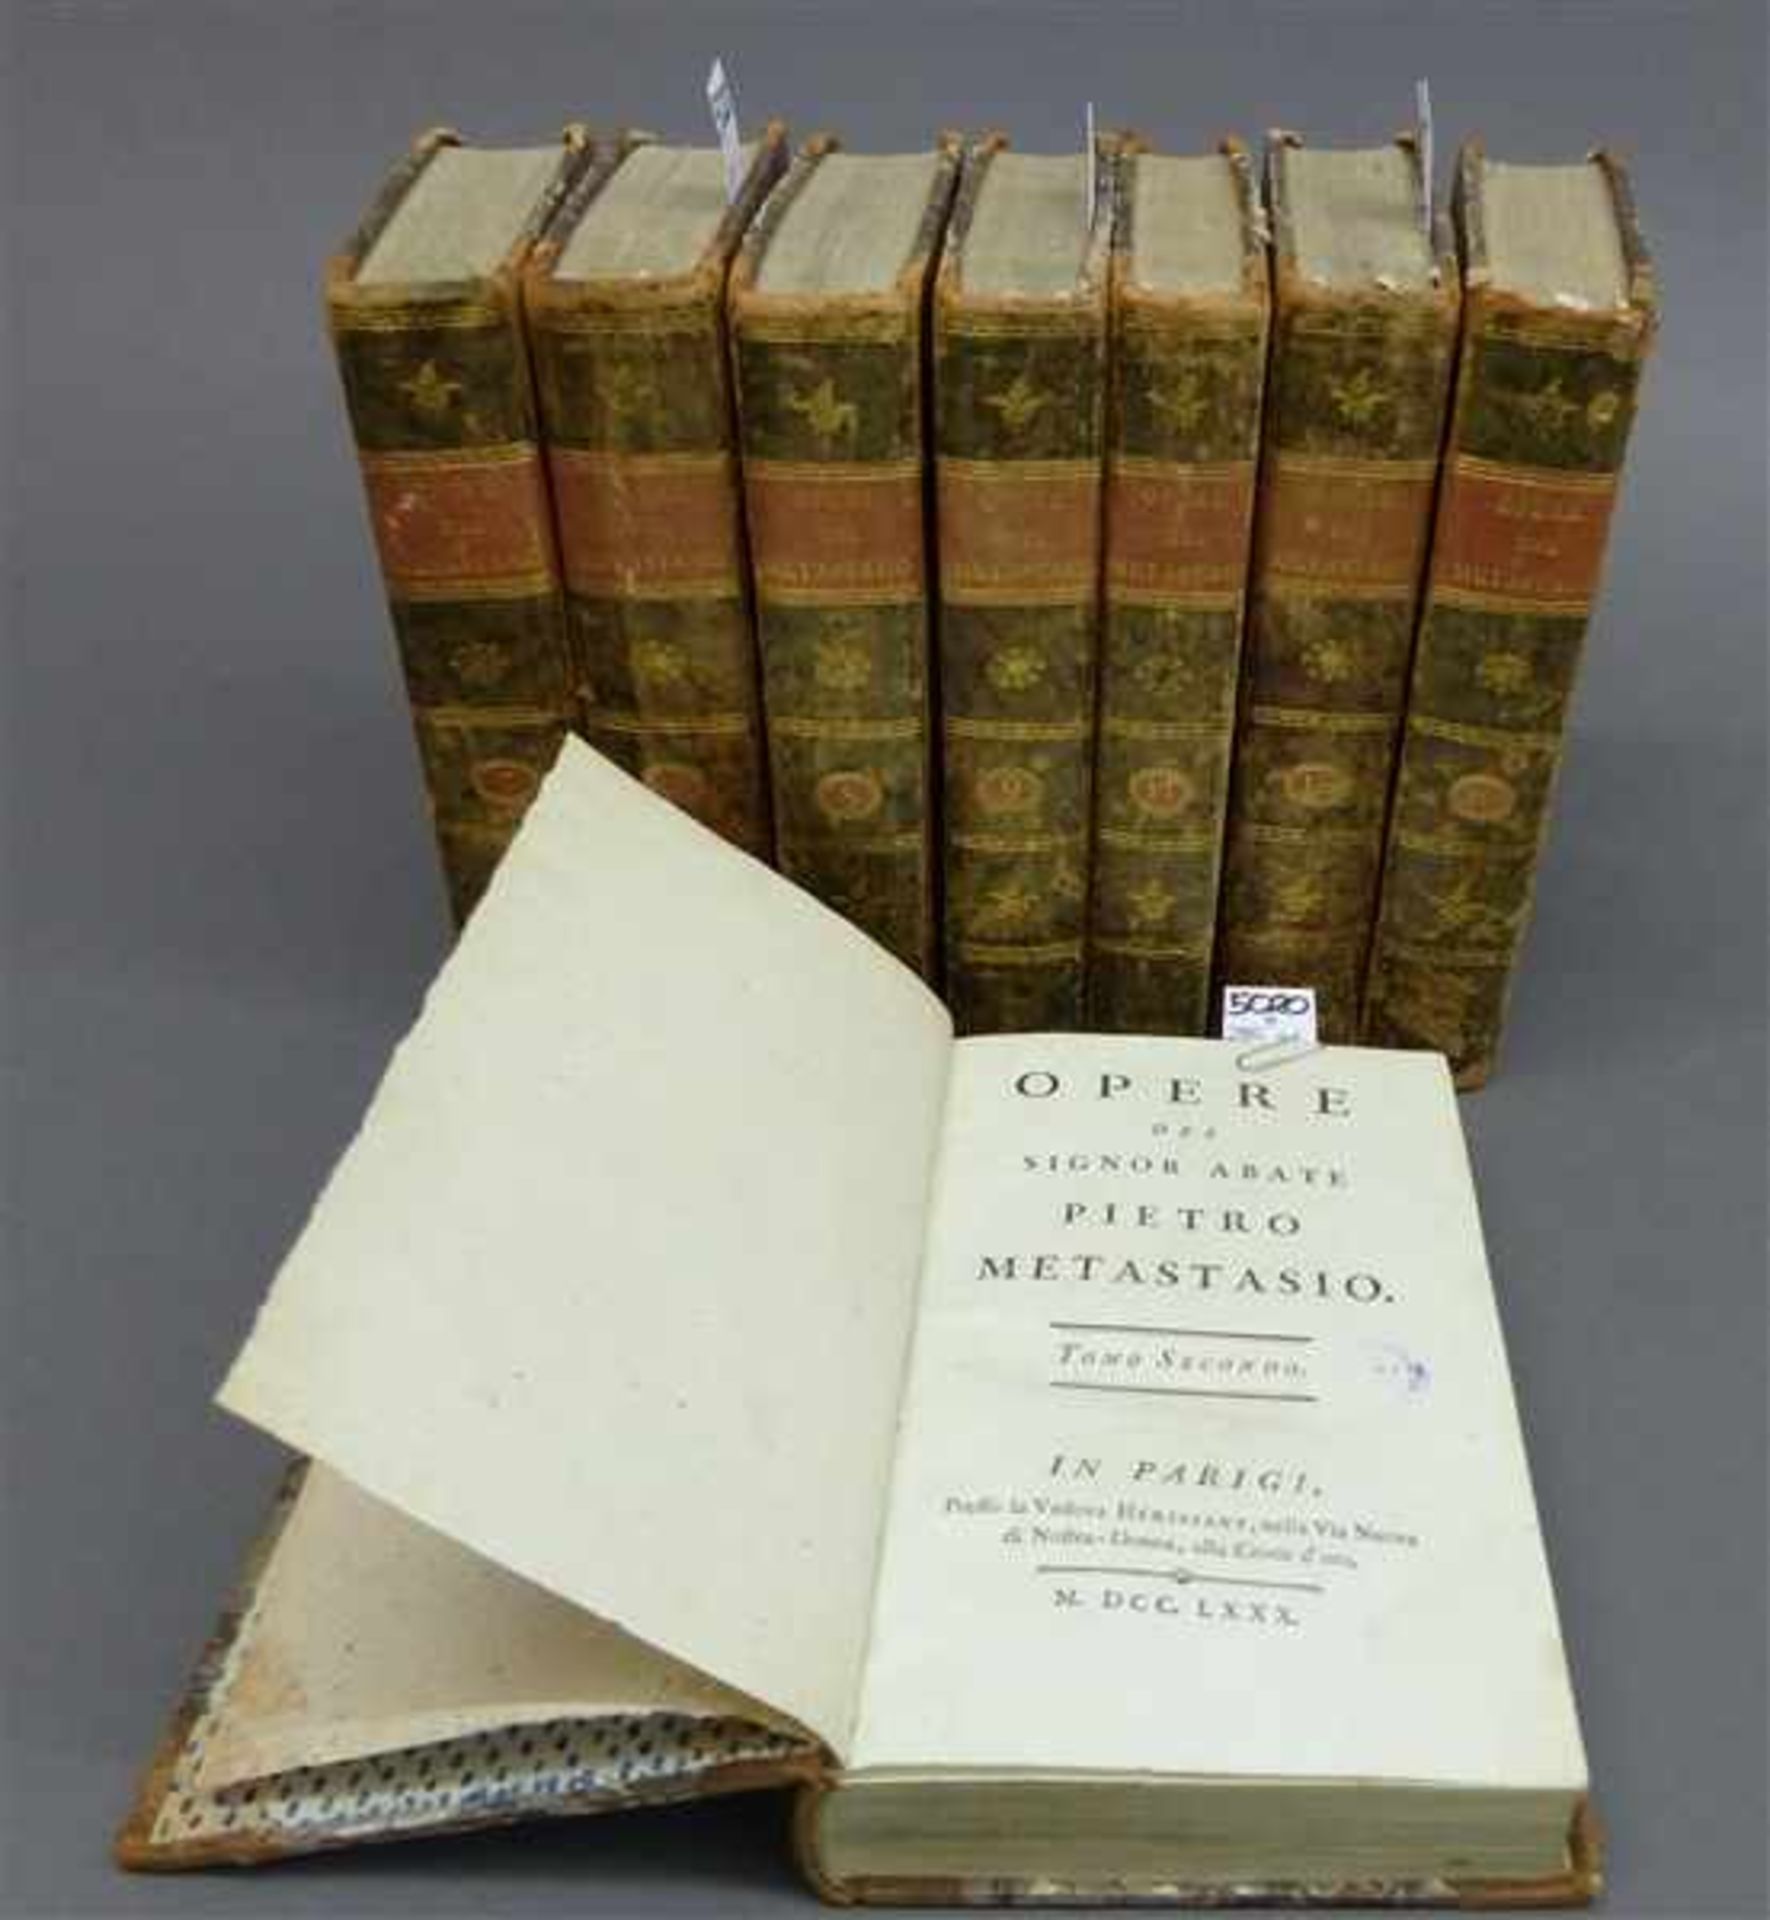 8 BücherWerke des Abts Pietro Melastasio, 8 Bände, 18. Jh., mit Abbildungen, gedruckt in Paris,